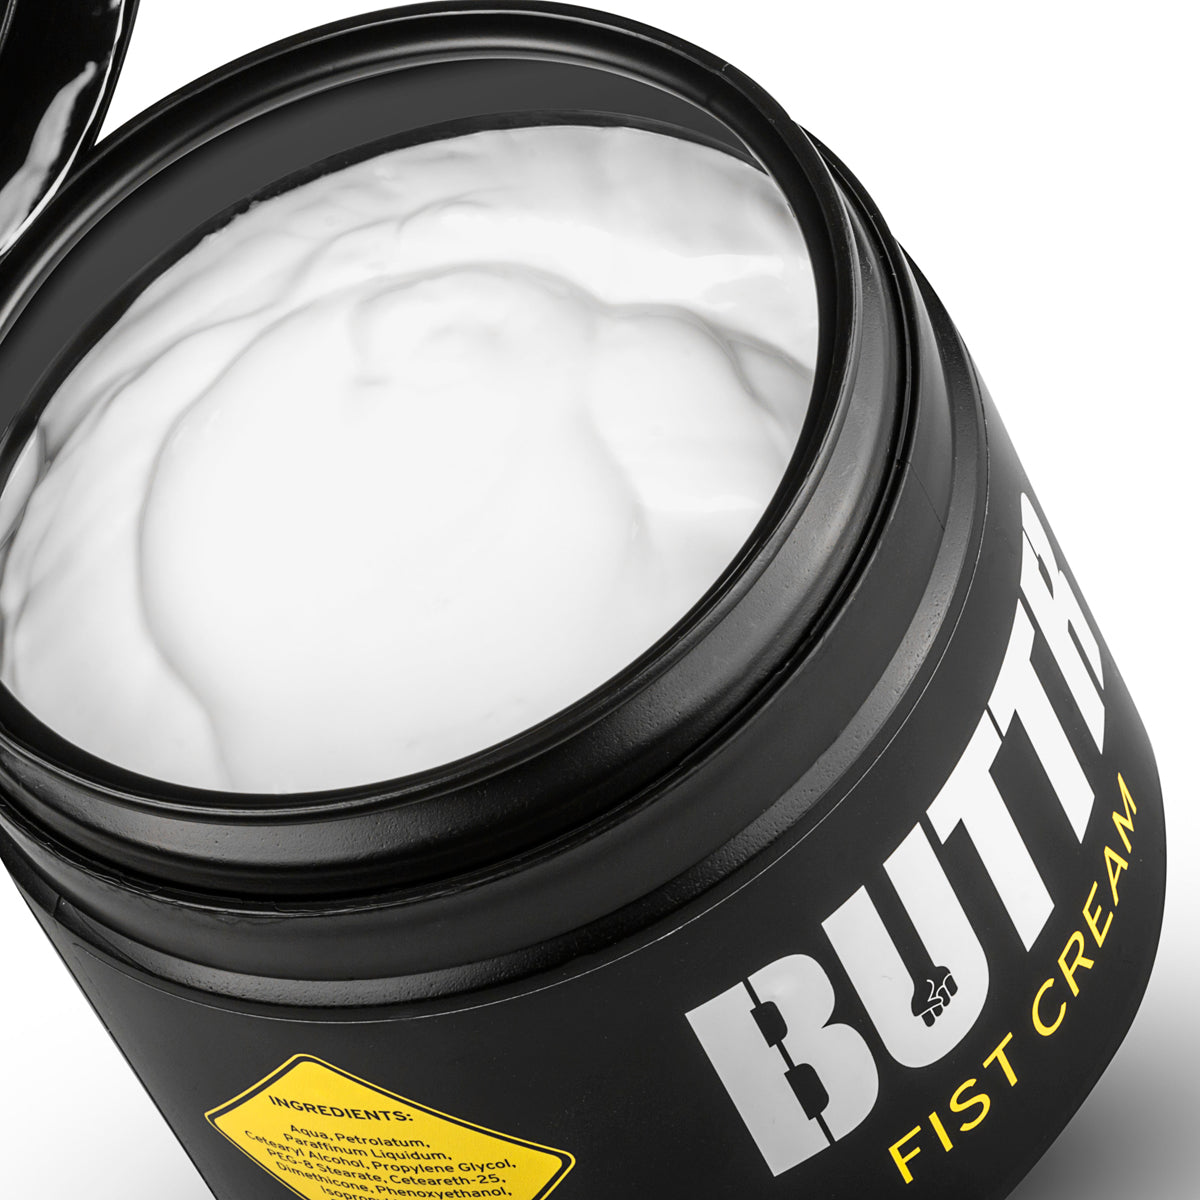 BUTTR Fisting  crème is dikker dan standaard glijmiddel, en daardoor geschikt voor bottoms en versa's die moeite hebben met anale penetratie. Te koop bij Flavourez